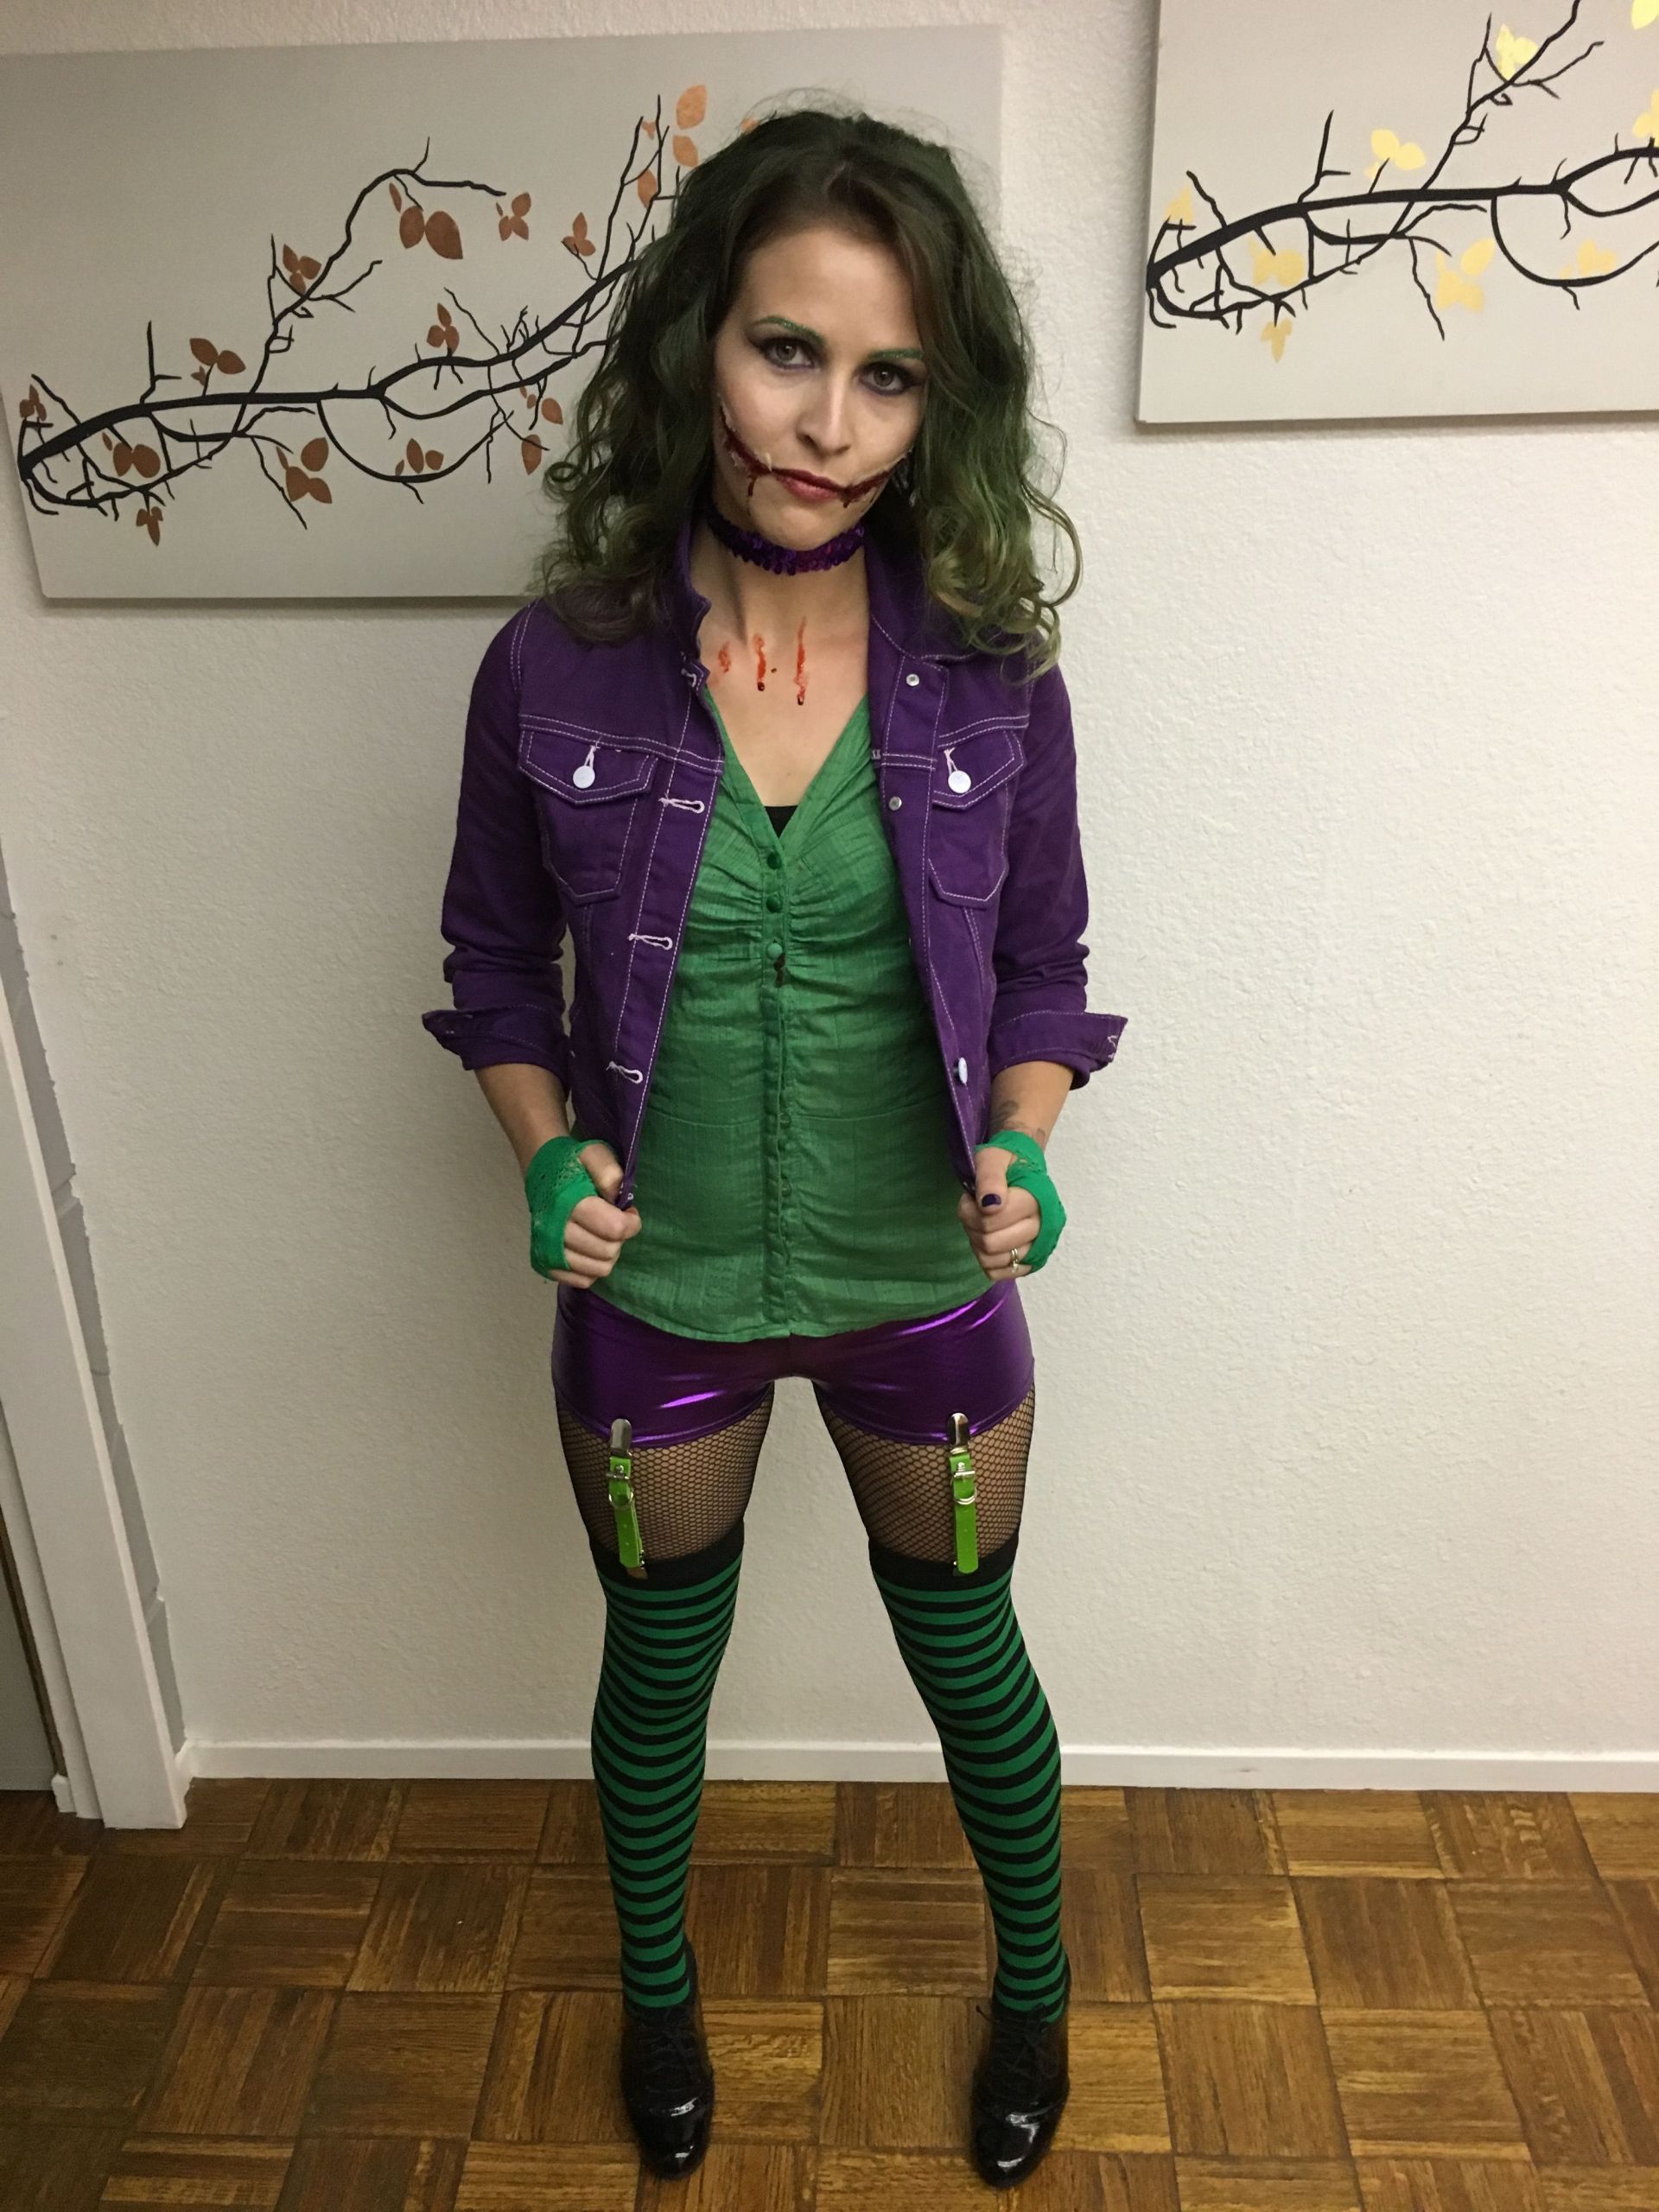 DIY Joker Costume Female
 Joker Costume Diy Female